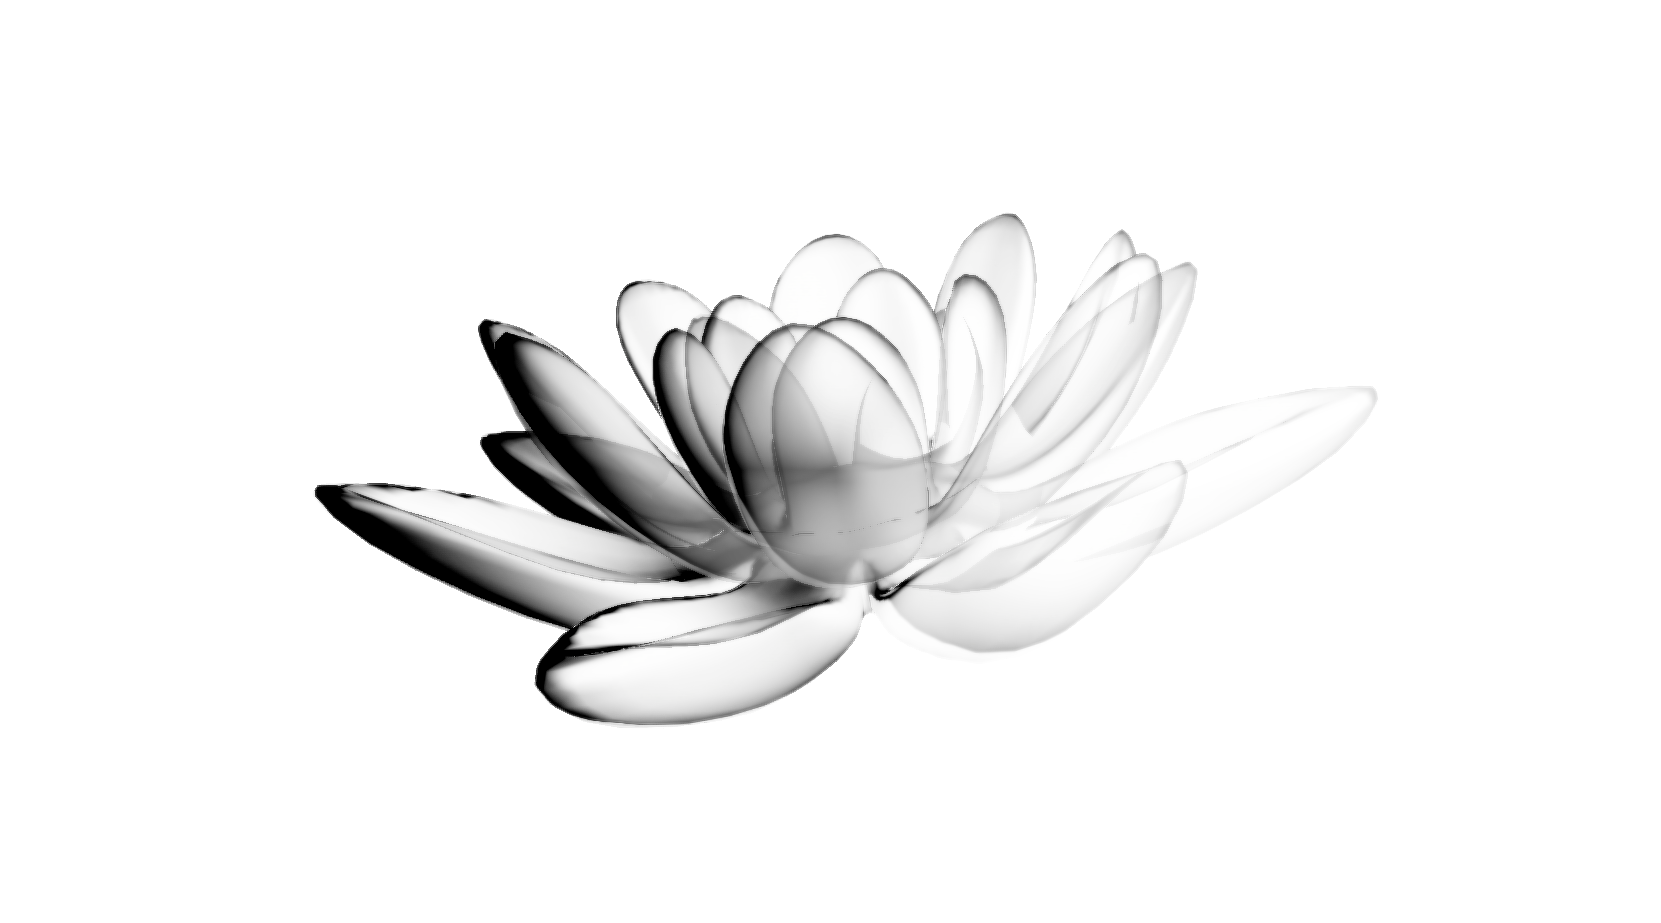 Lotus flower painted as ink